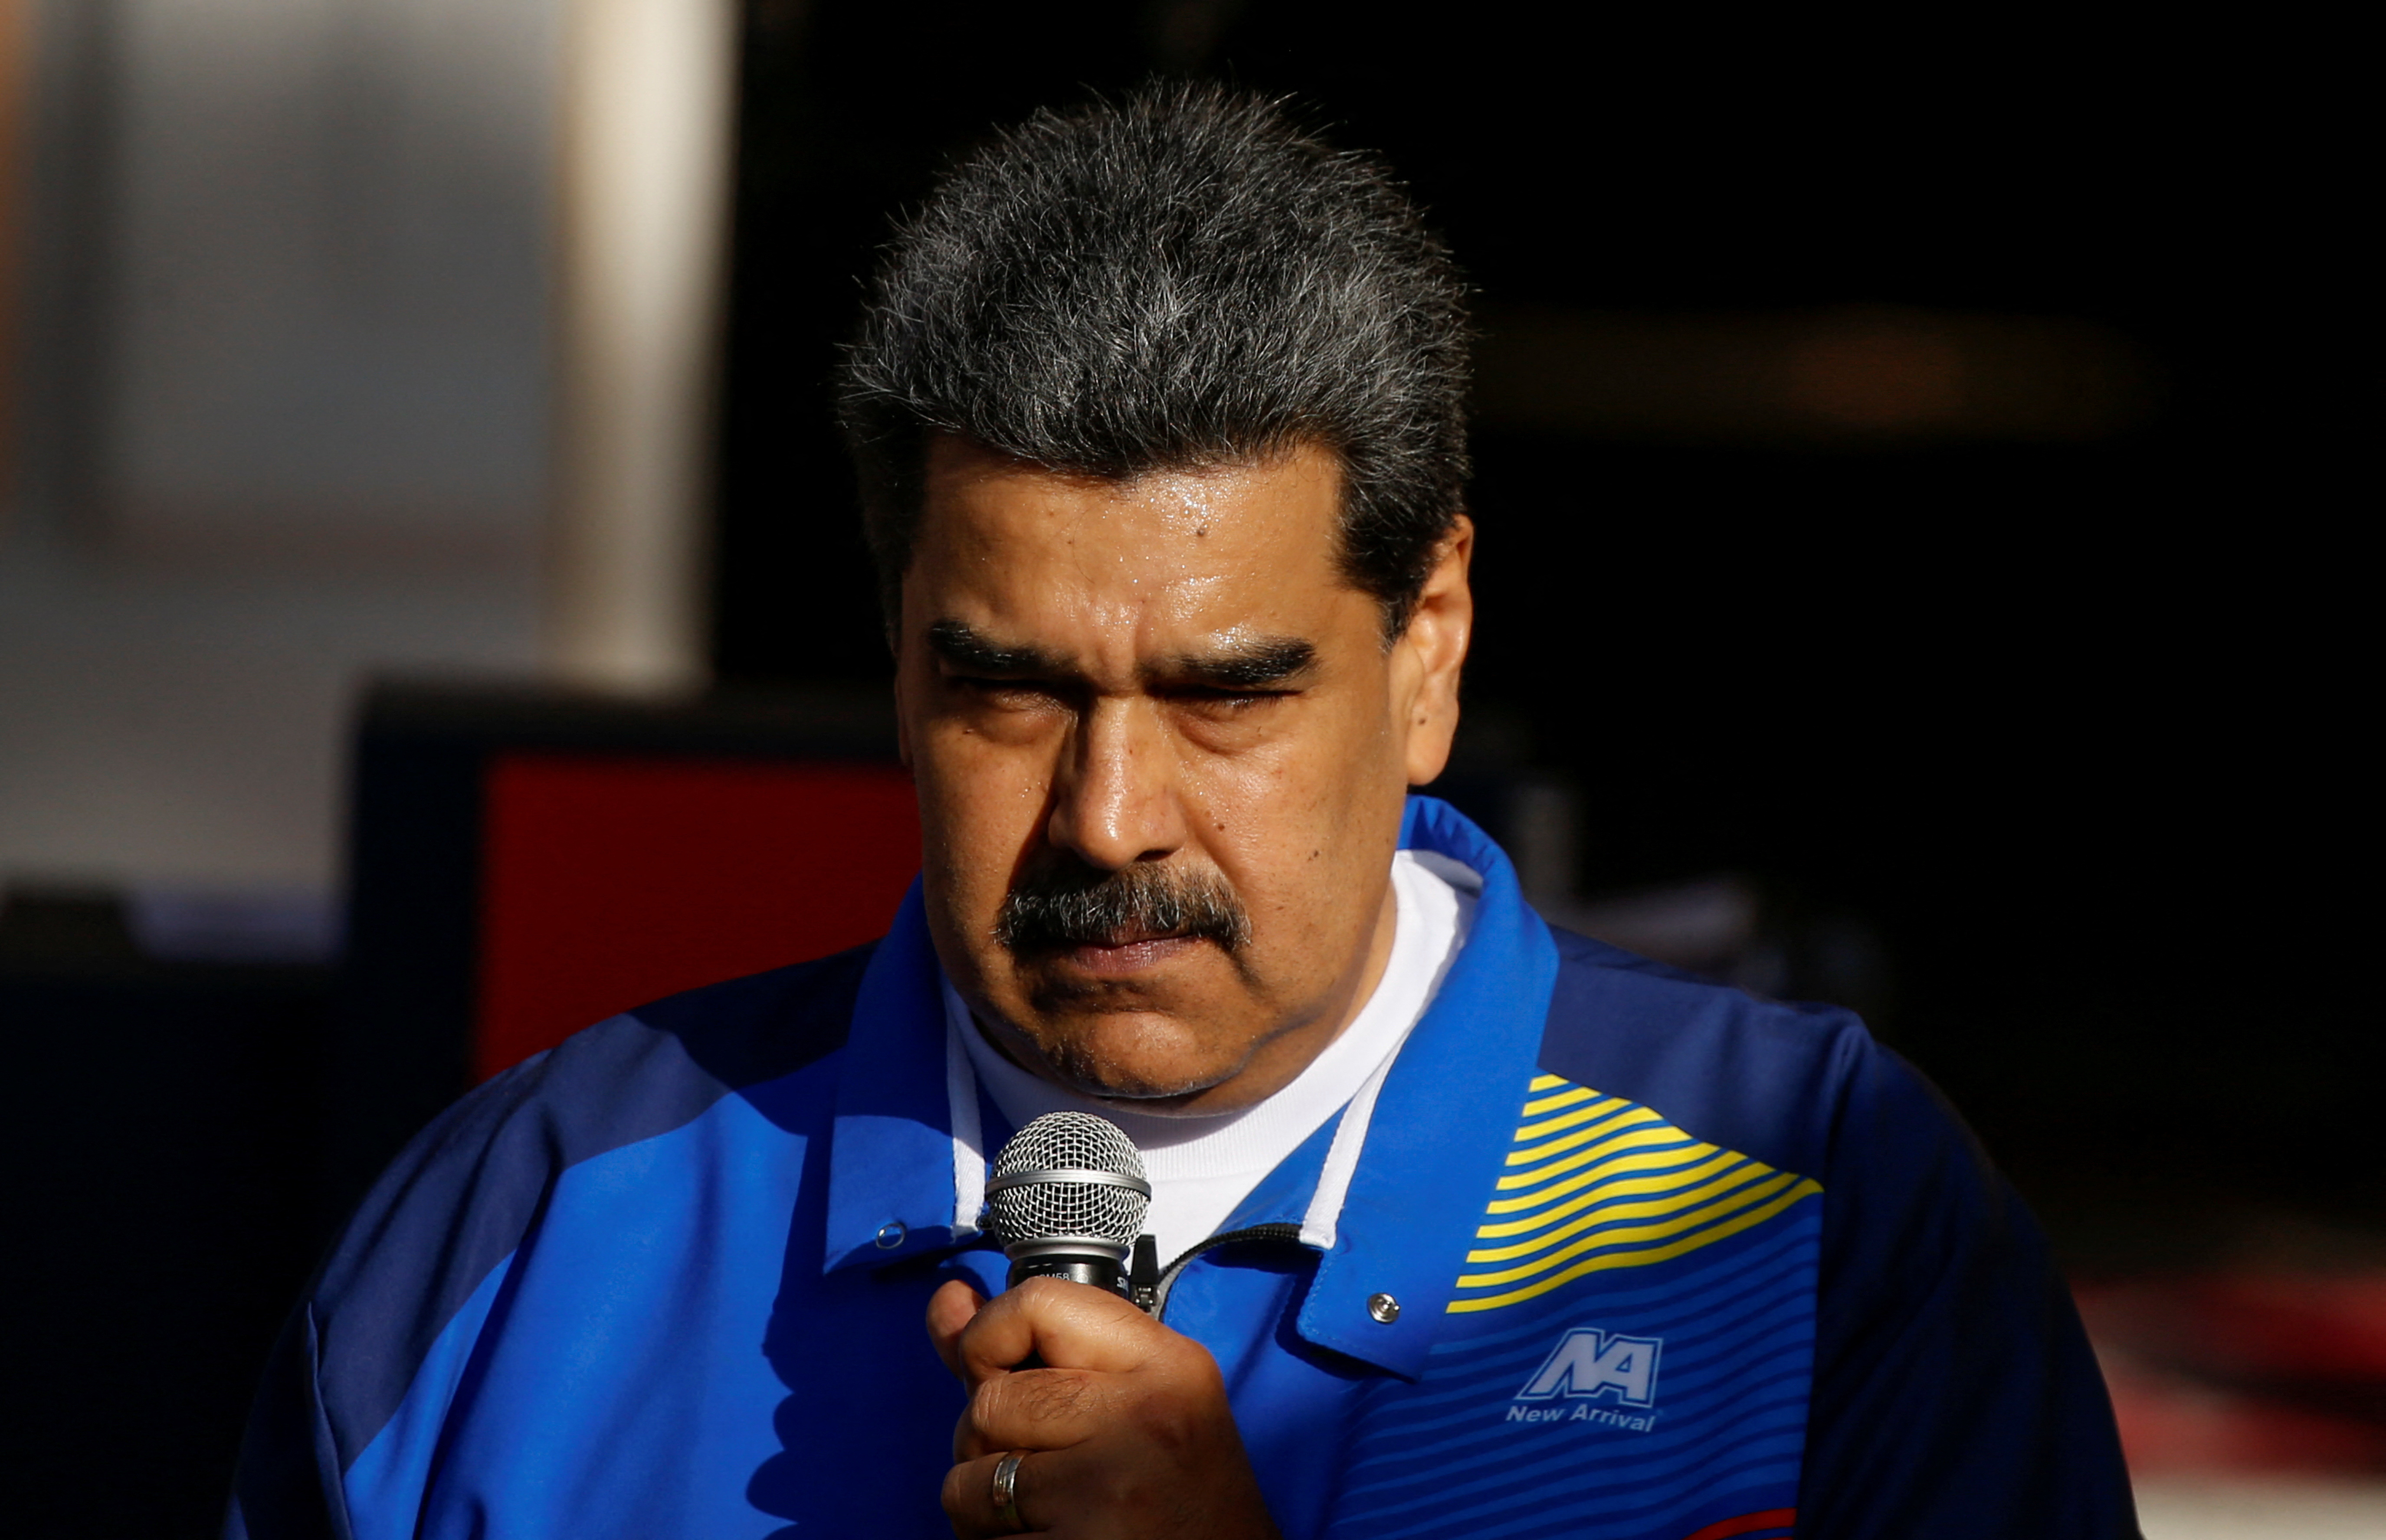 El dictador Maduro canceló a último momento su viaje a la Cumbre Iberoamericana